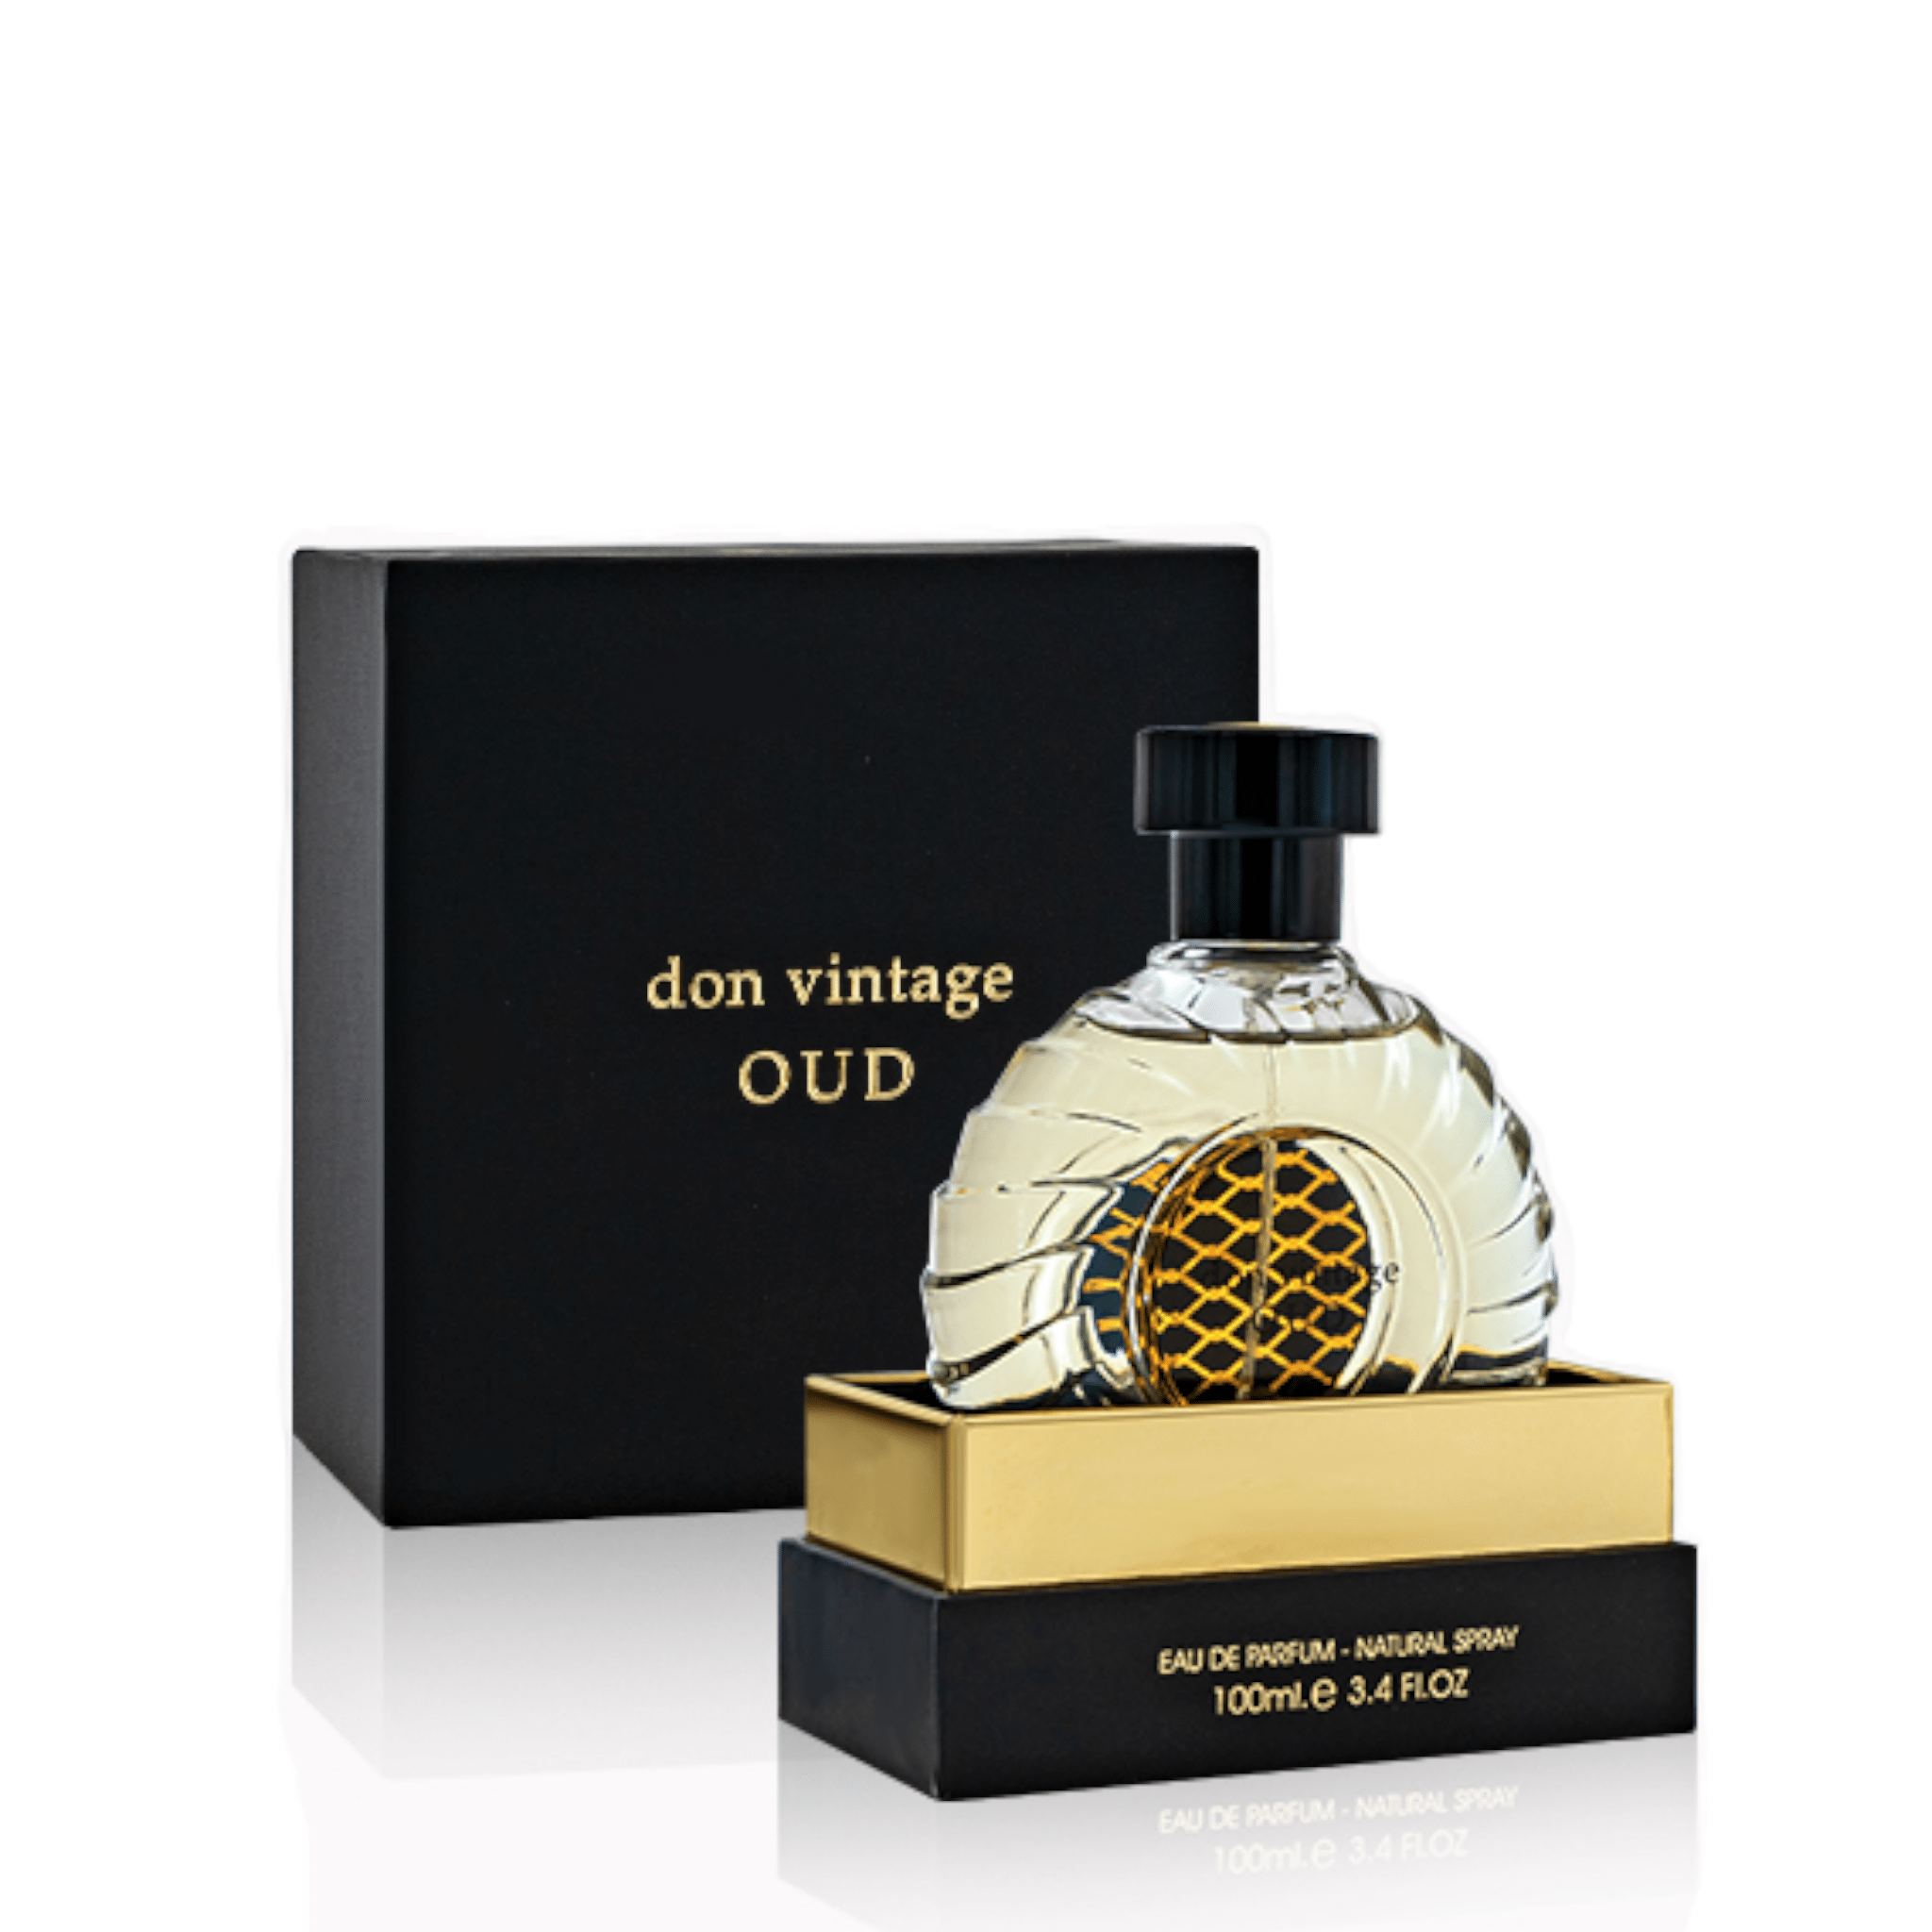 Don Vintage Oud Perfume / Eau De Parfum By Fa Paris (Fragrance World)